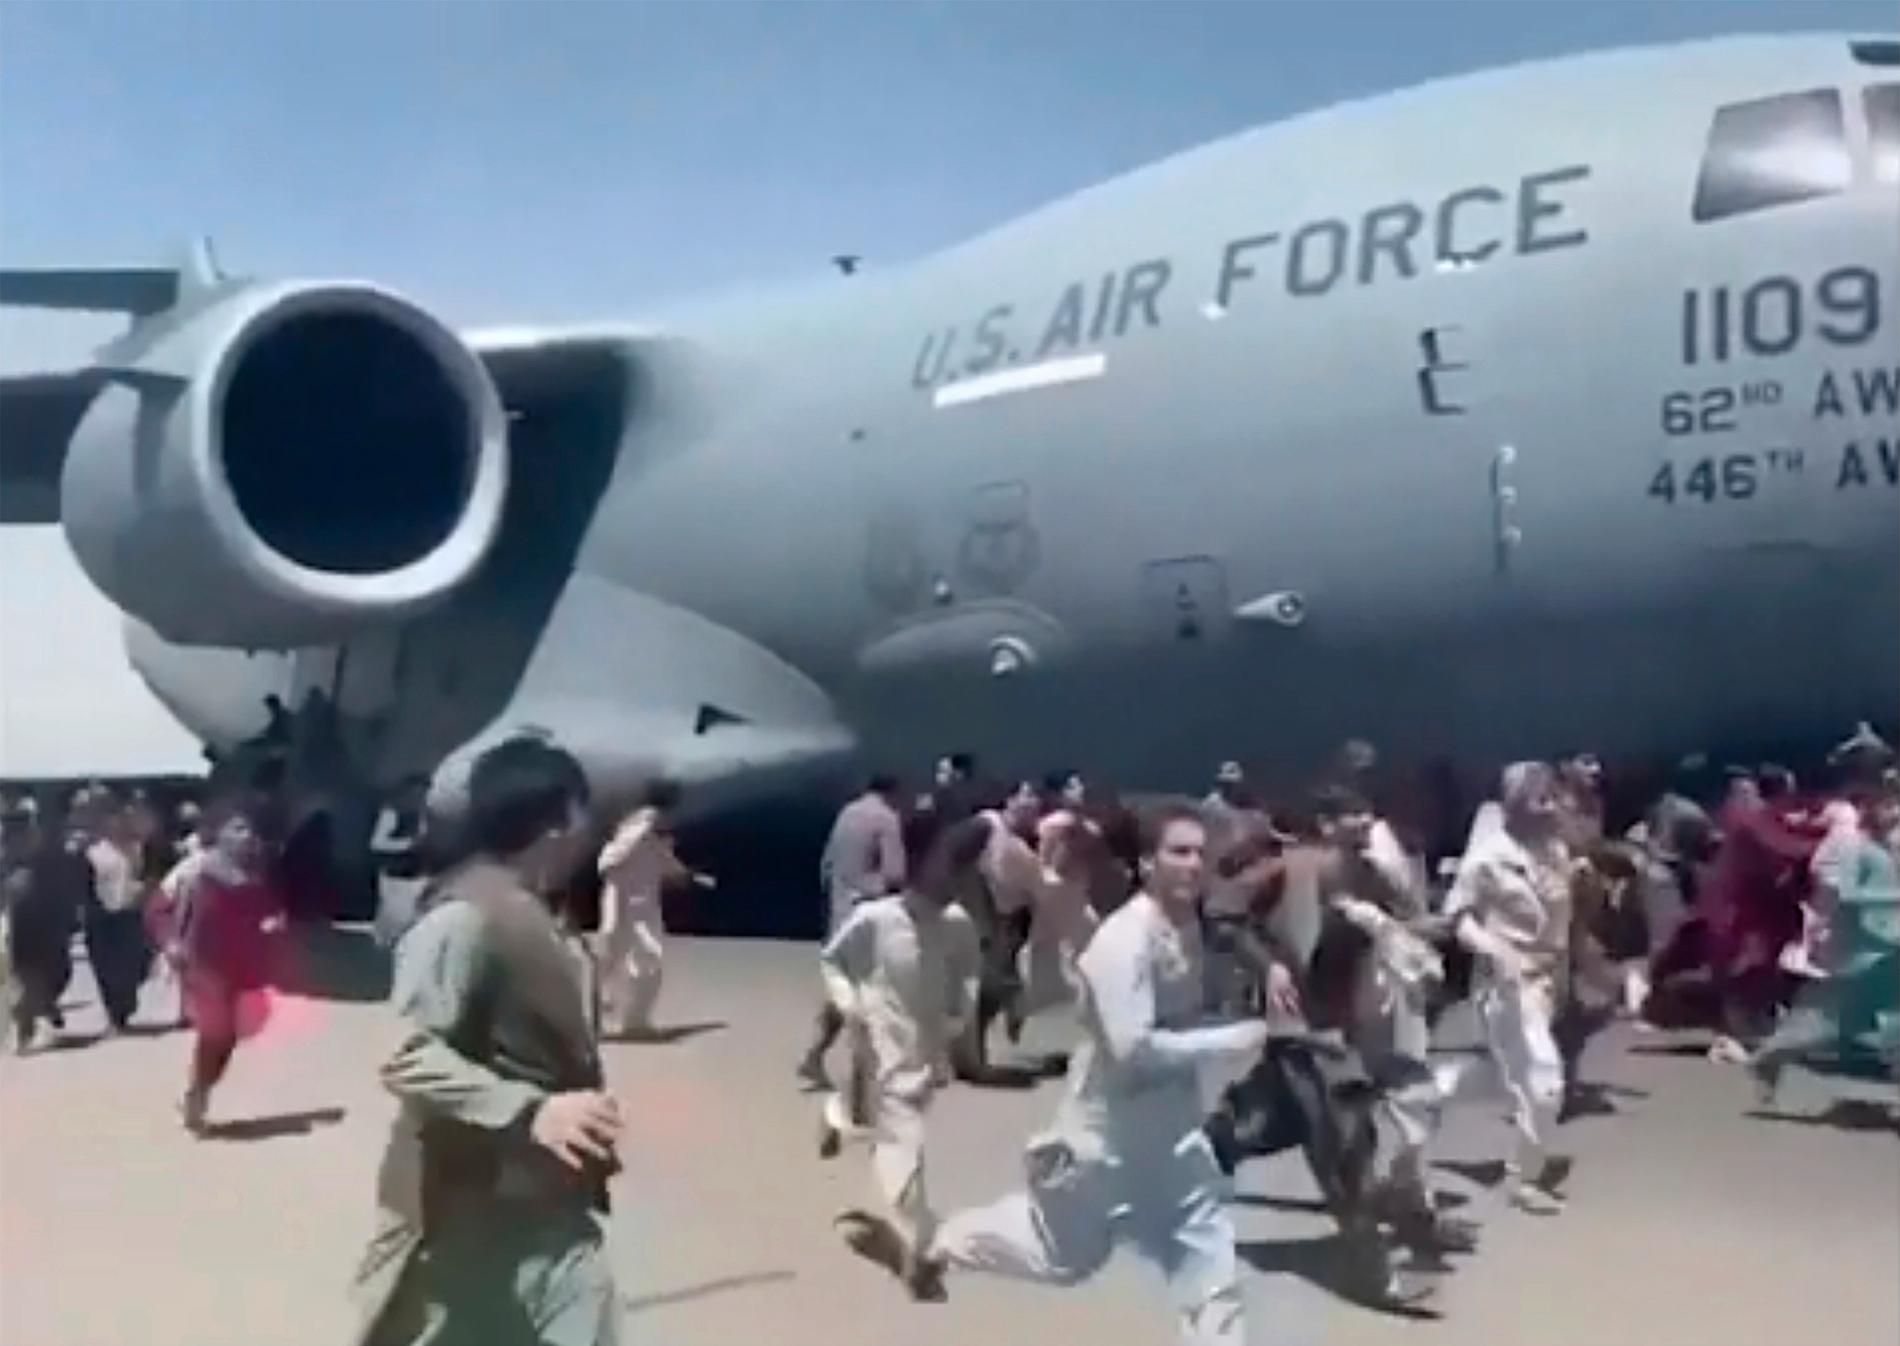 Hundratals afghaner sprang på landningsbanan när det amerikanska C-17-planet lyfte under måndagen. 